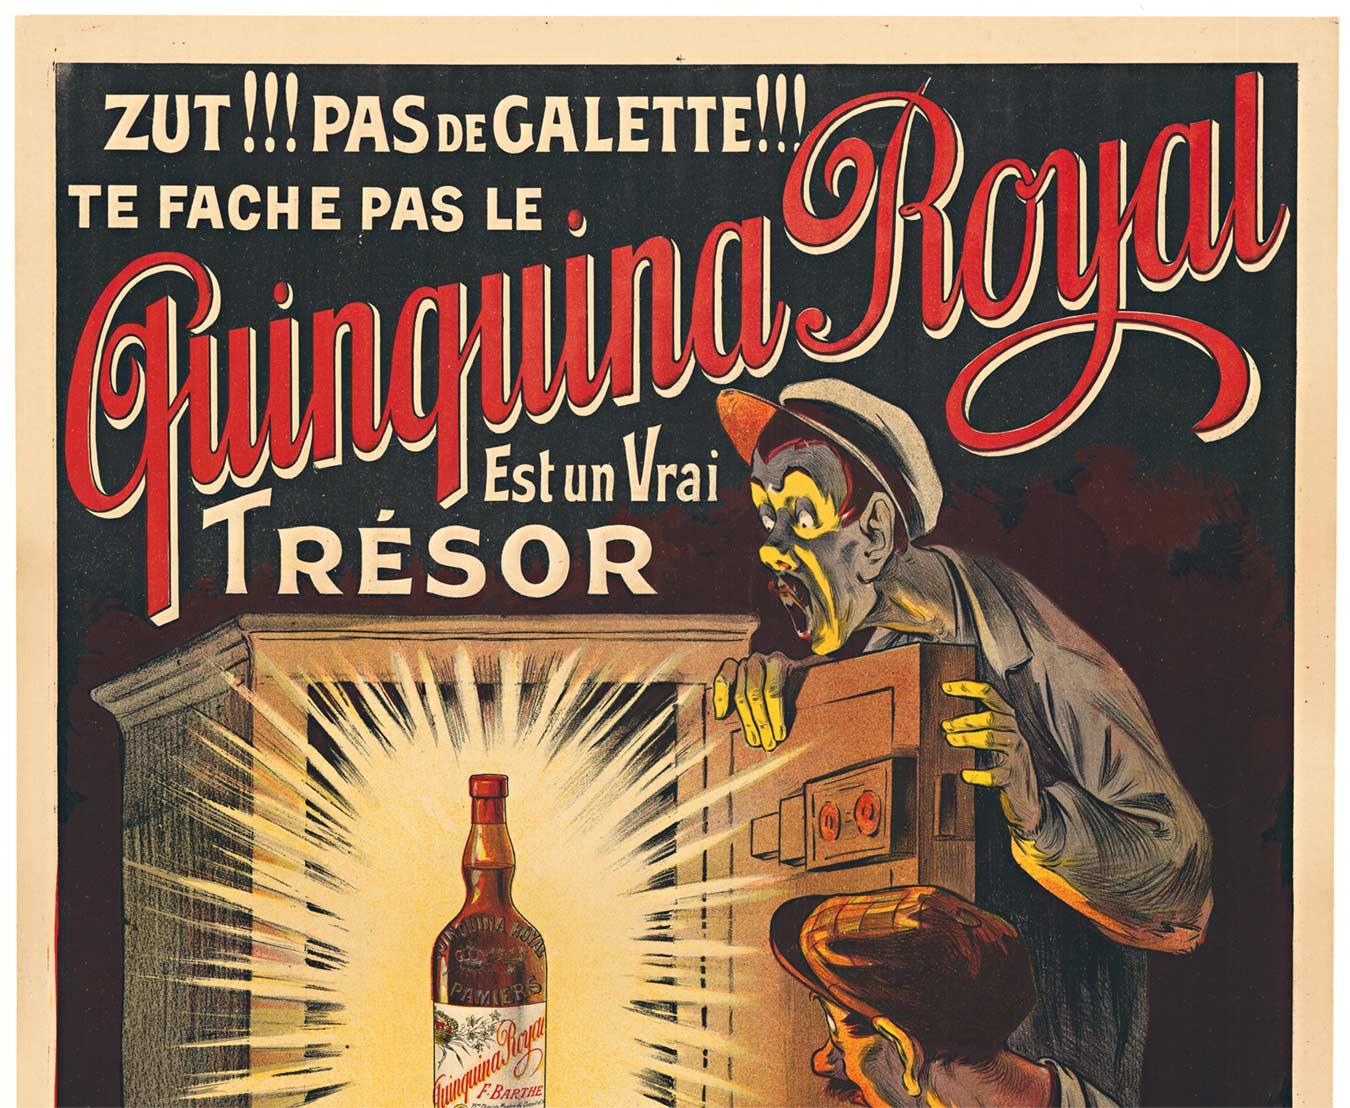 Original Quinquina Royal Est un vrai trésor vintage liquor poster  c.1902 - Print de Eugene Oge